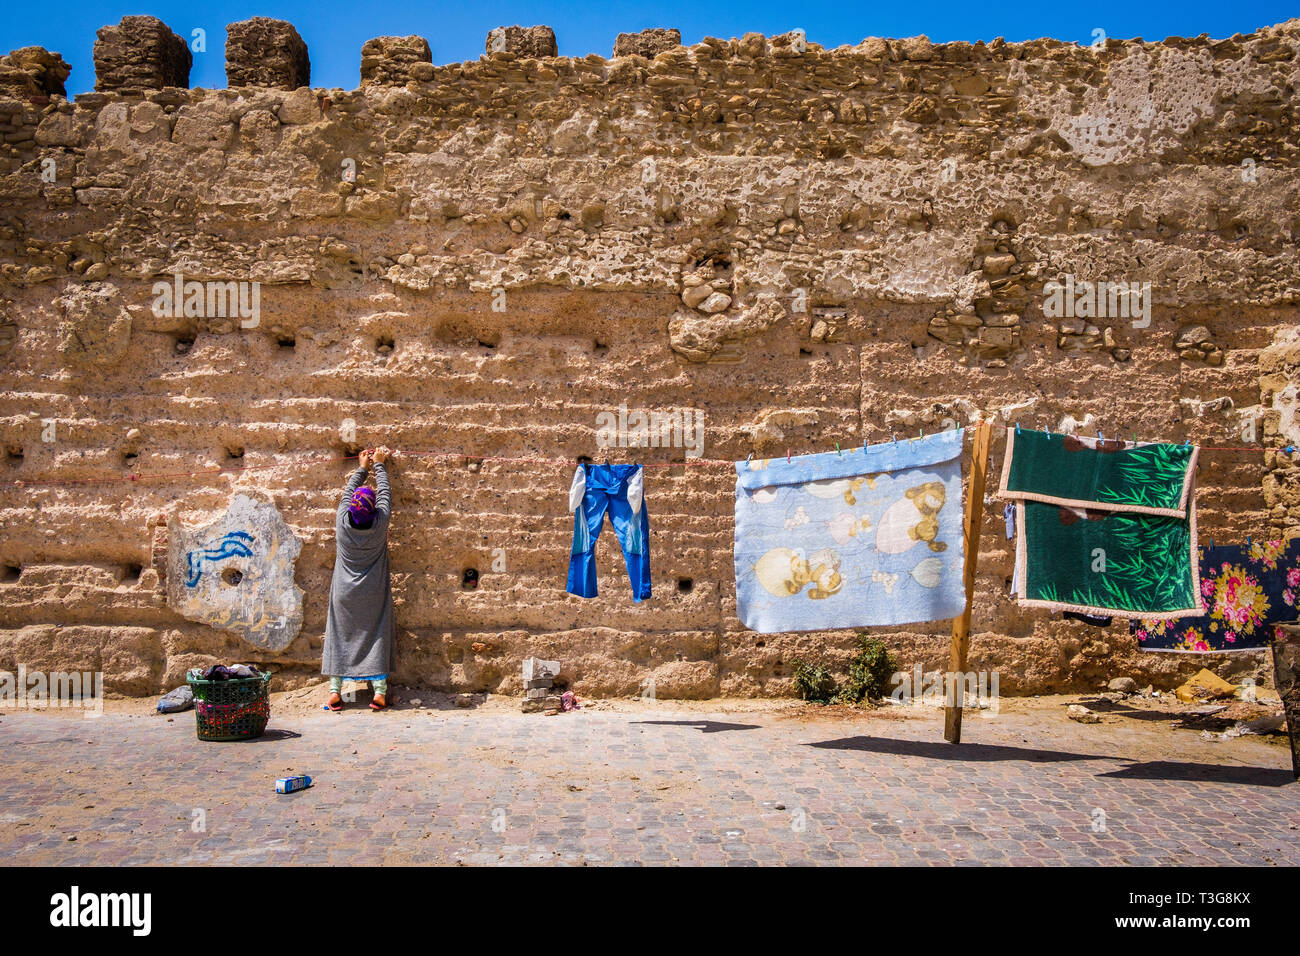 Il Marocco. Essaouira. Città e porto sulla costa atlantica del Marocco con la sua medina registrato come sito del Patrimonio Mondiale dell'UNESCO. Nel Mellah, vecchio ebreo Foto Stock